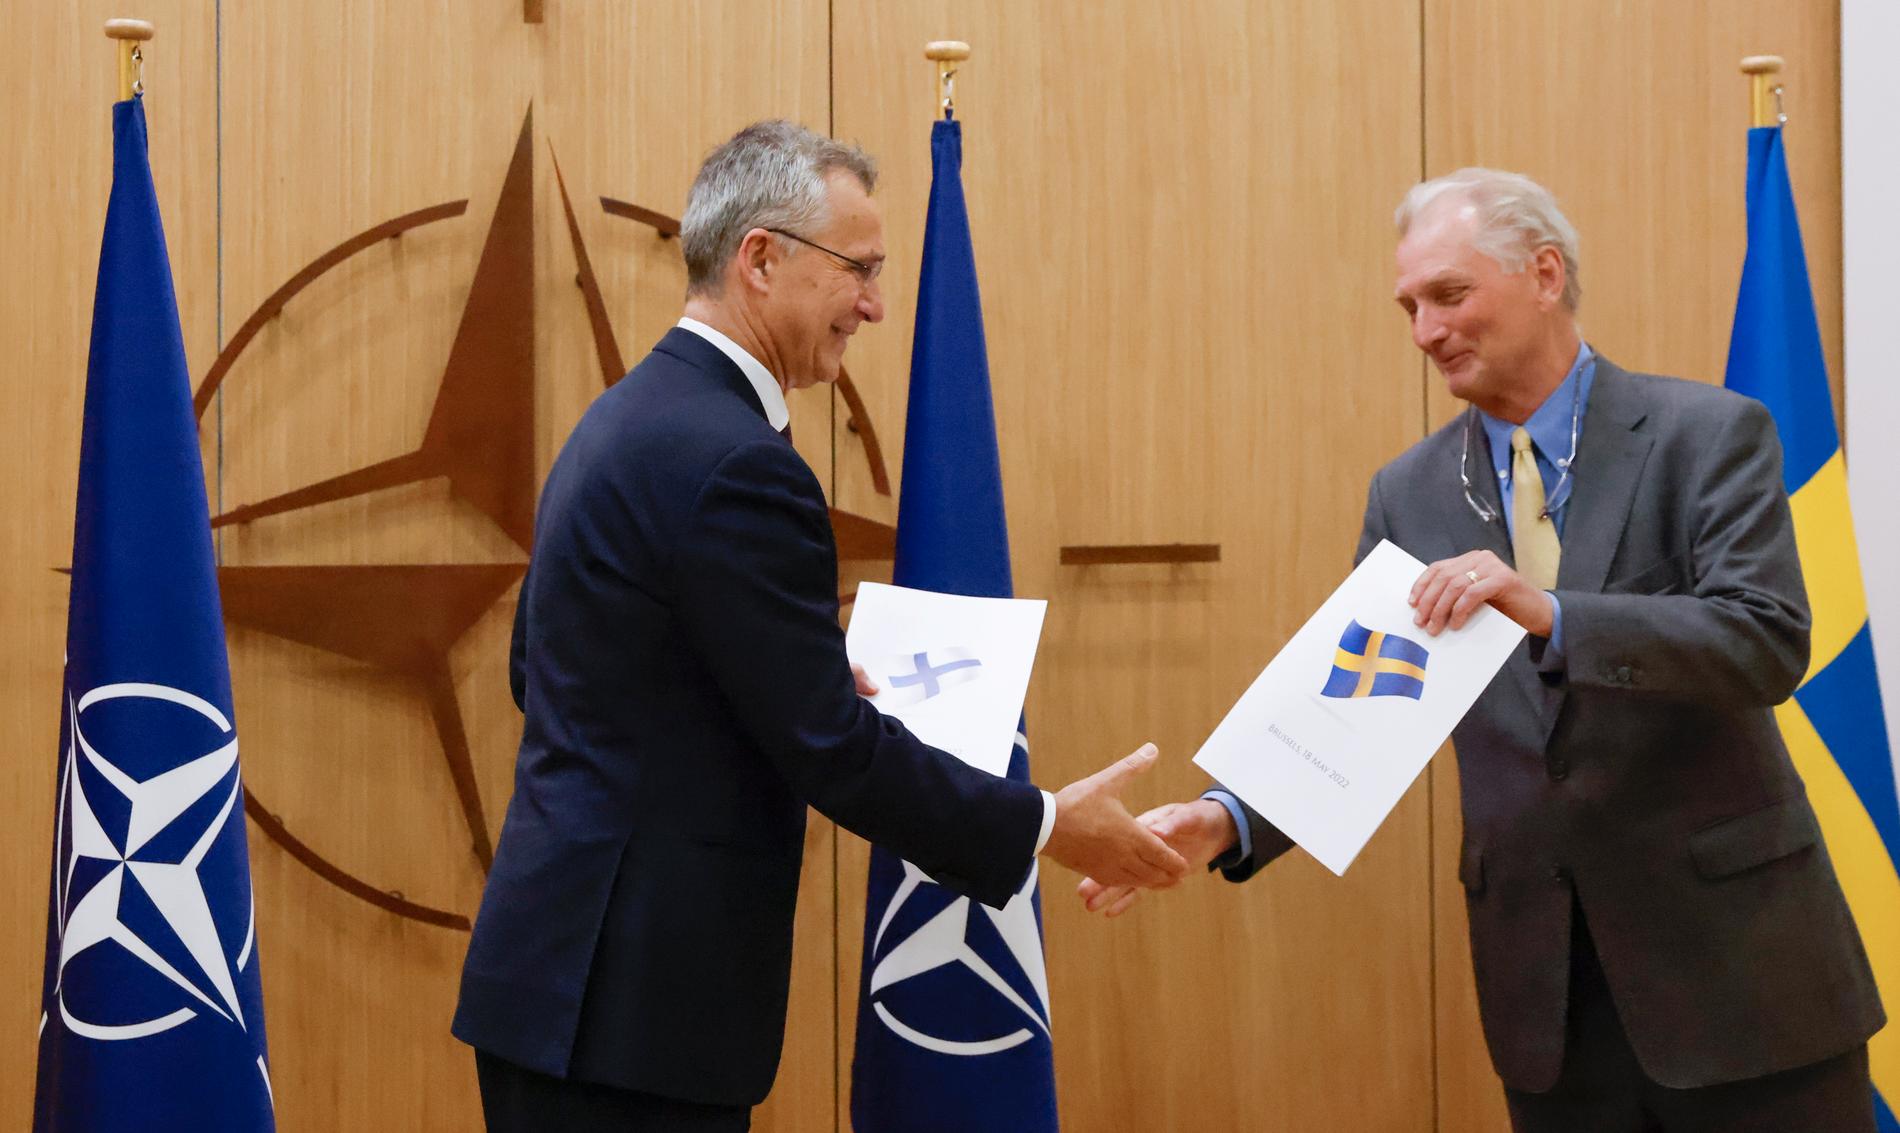 Axel Wernhoff överlämnar Sveriges Nato-ansökan till Jens Stoltenberg